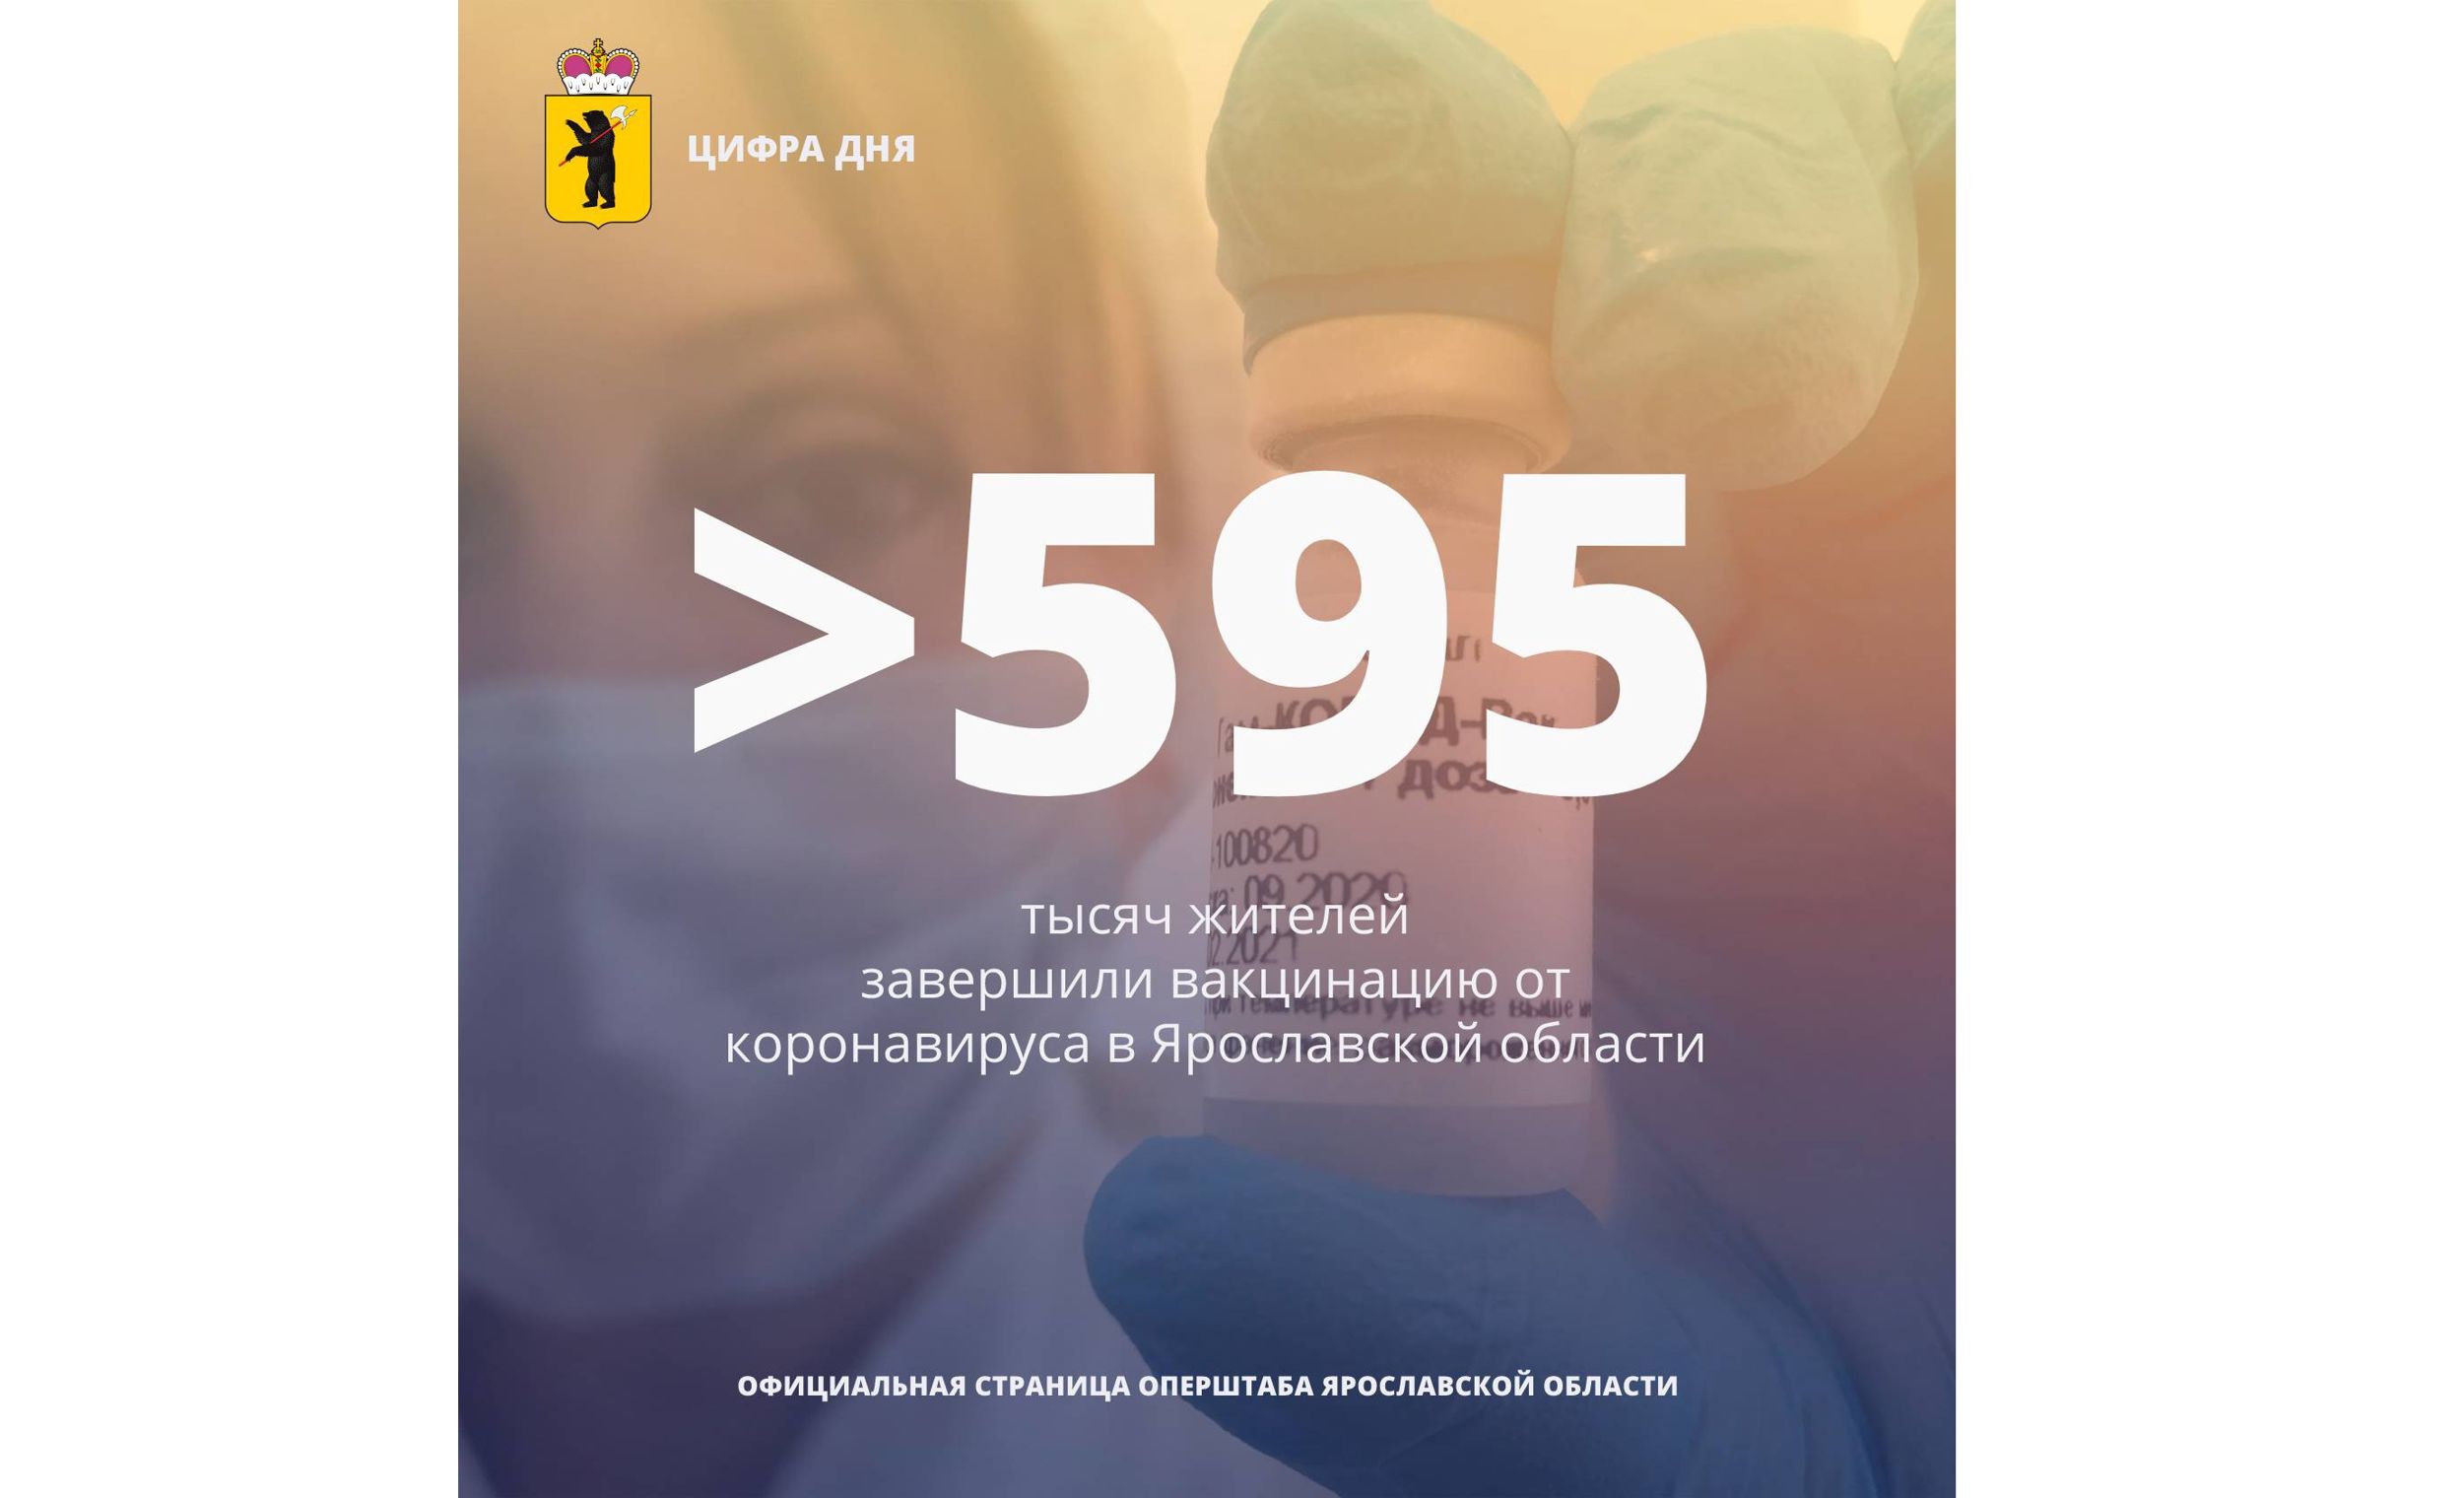 В Ярославской области полностью прошли вакцинацию от коронавируса почти 596 тысяч человек